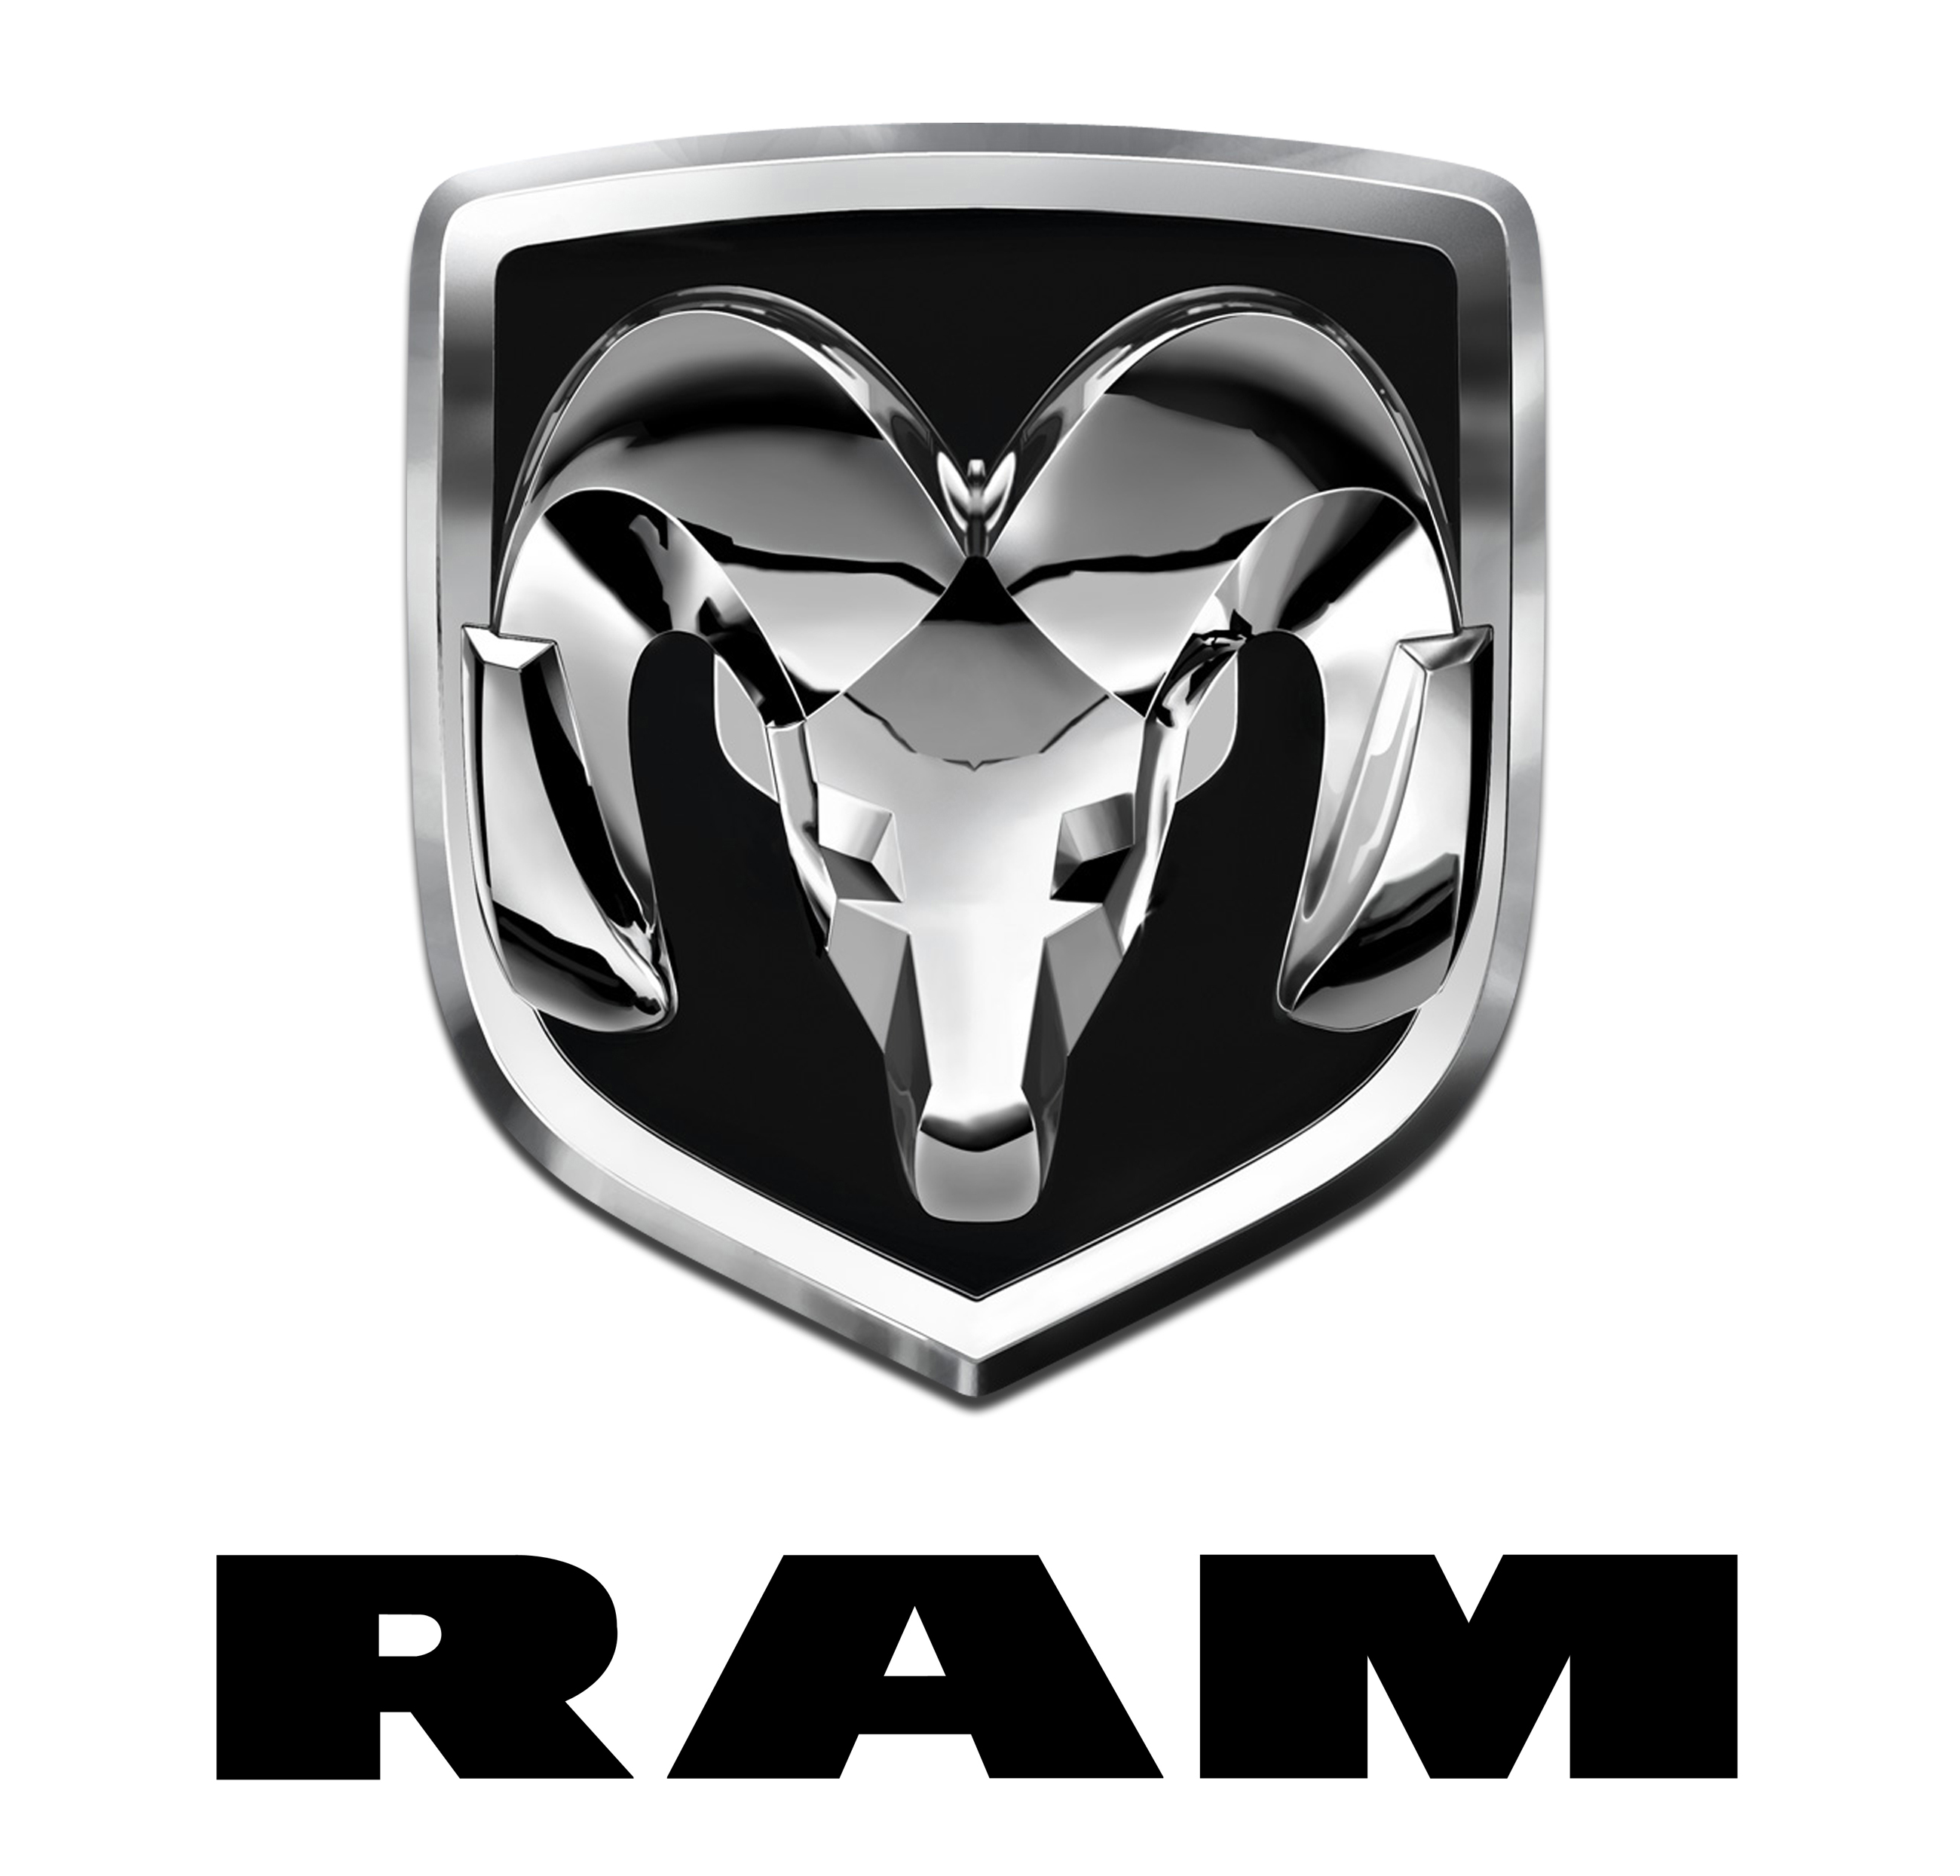 El top 100 imagen que animal es el logo de ram